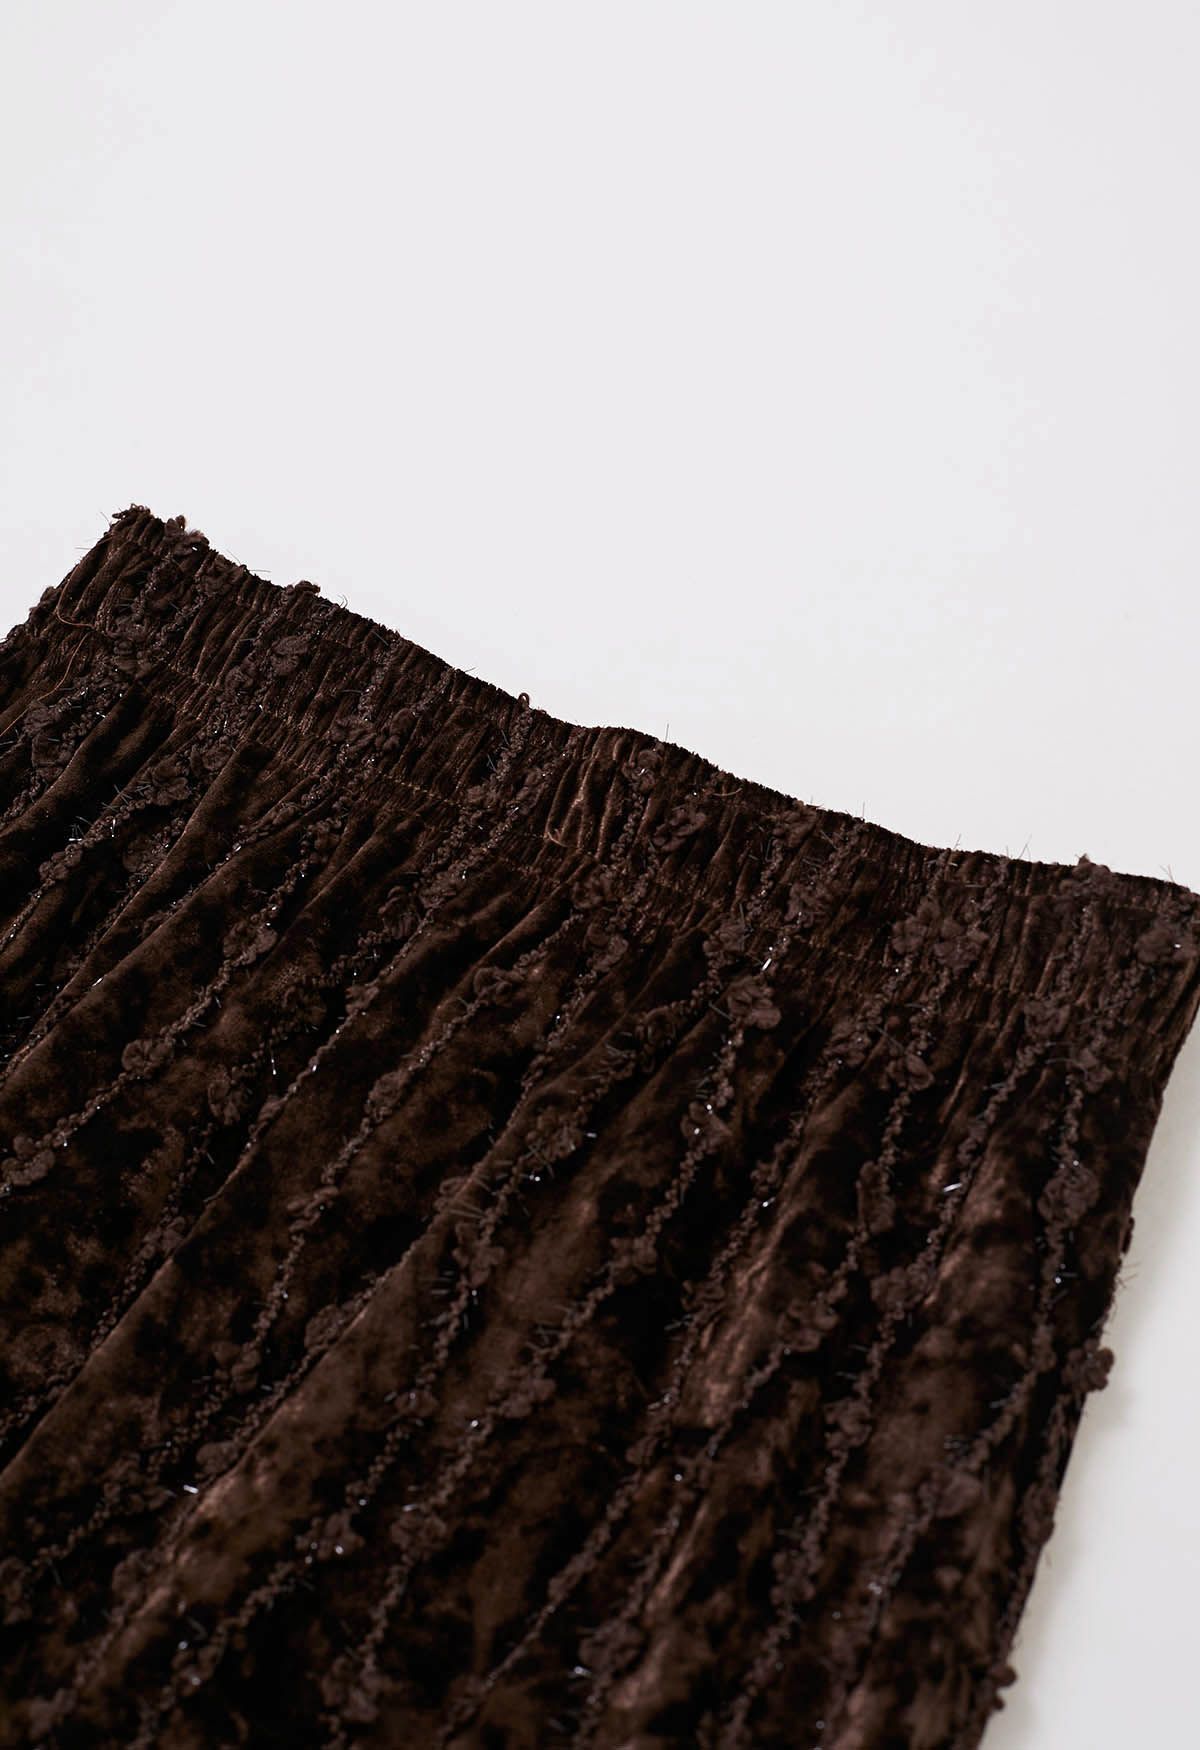 3D Floret Shimmer Fringe Velvet Midi Skirt in Brown